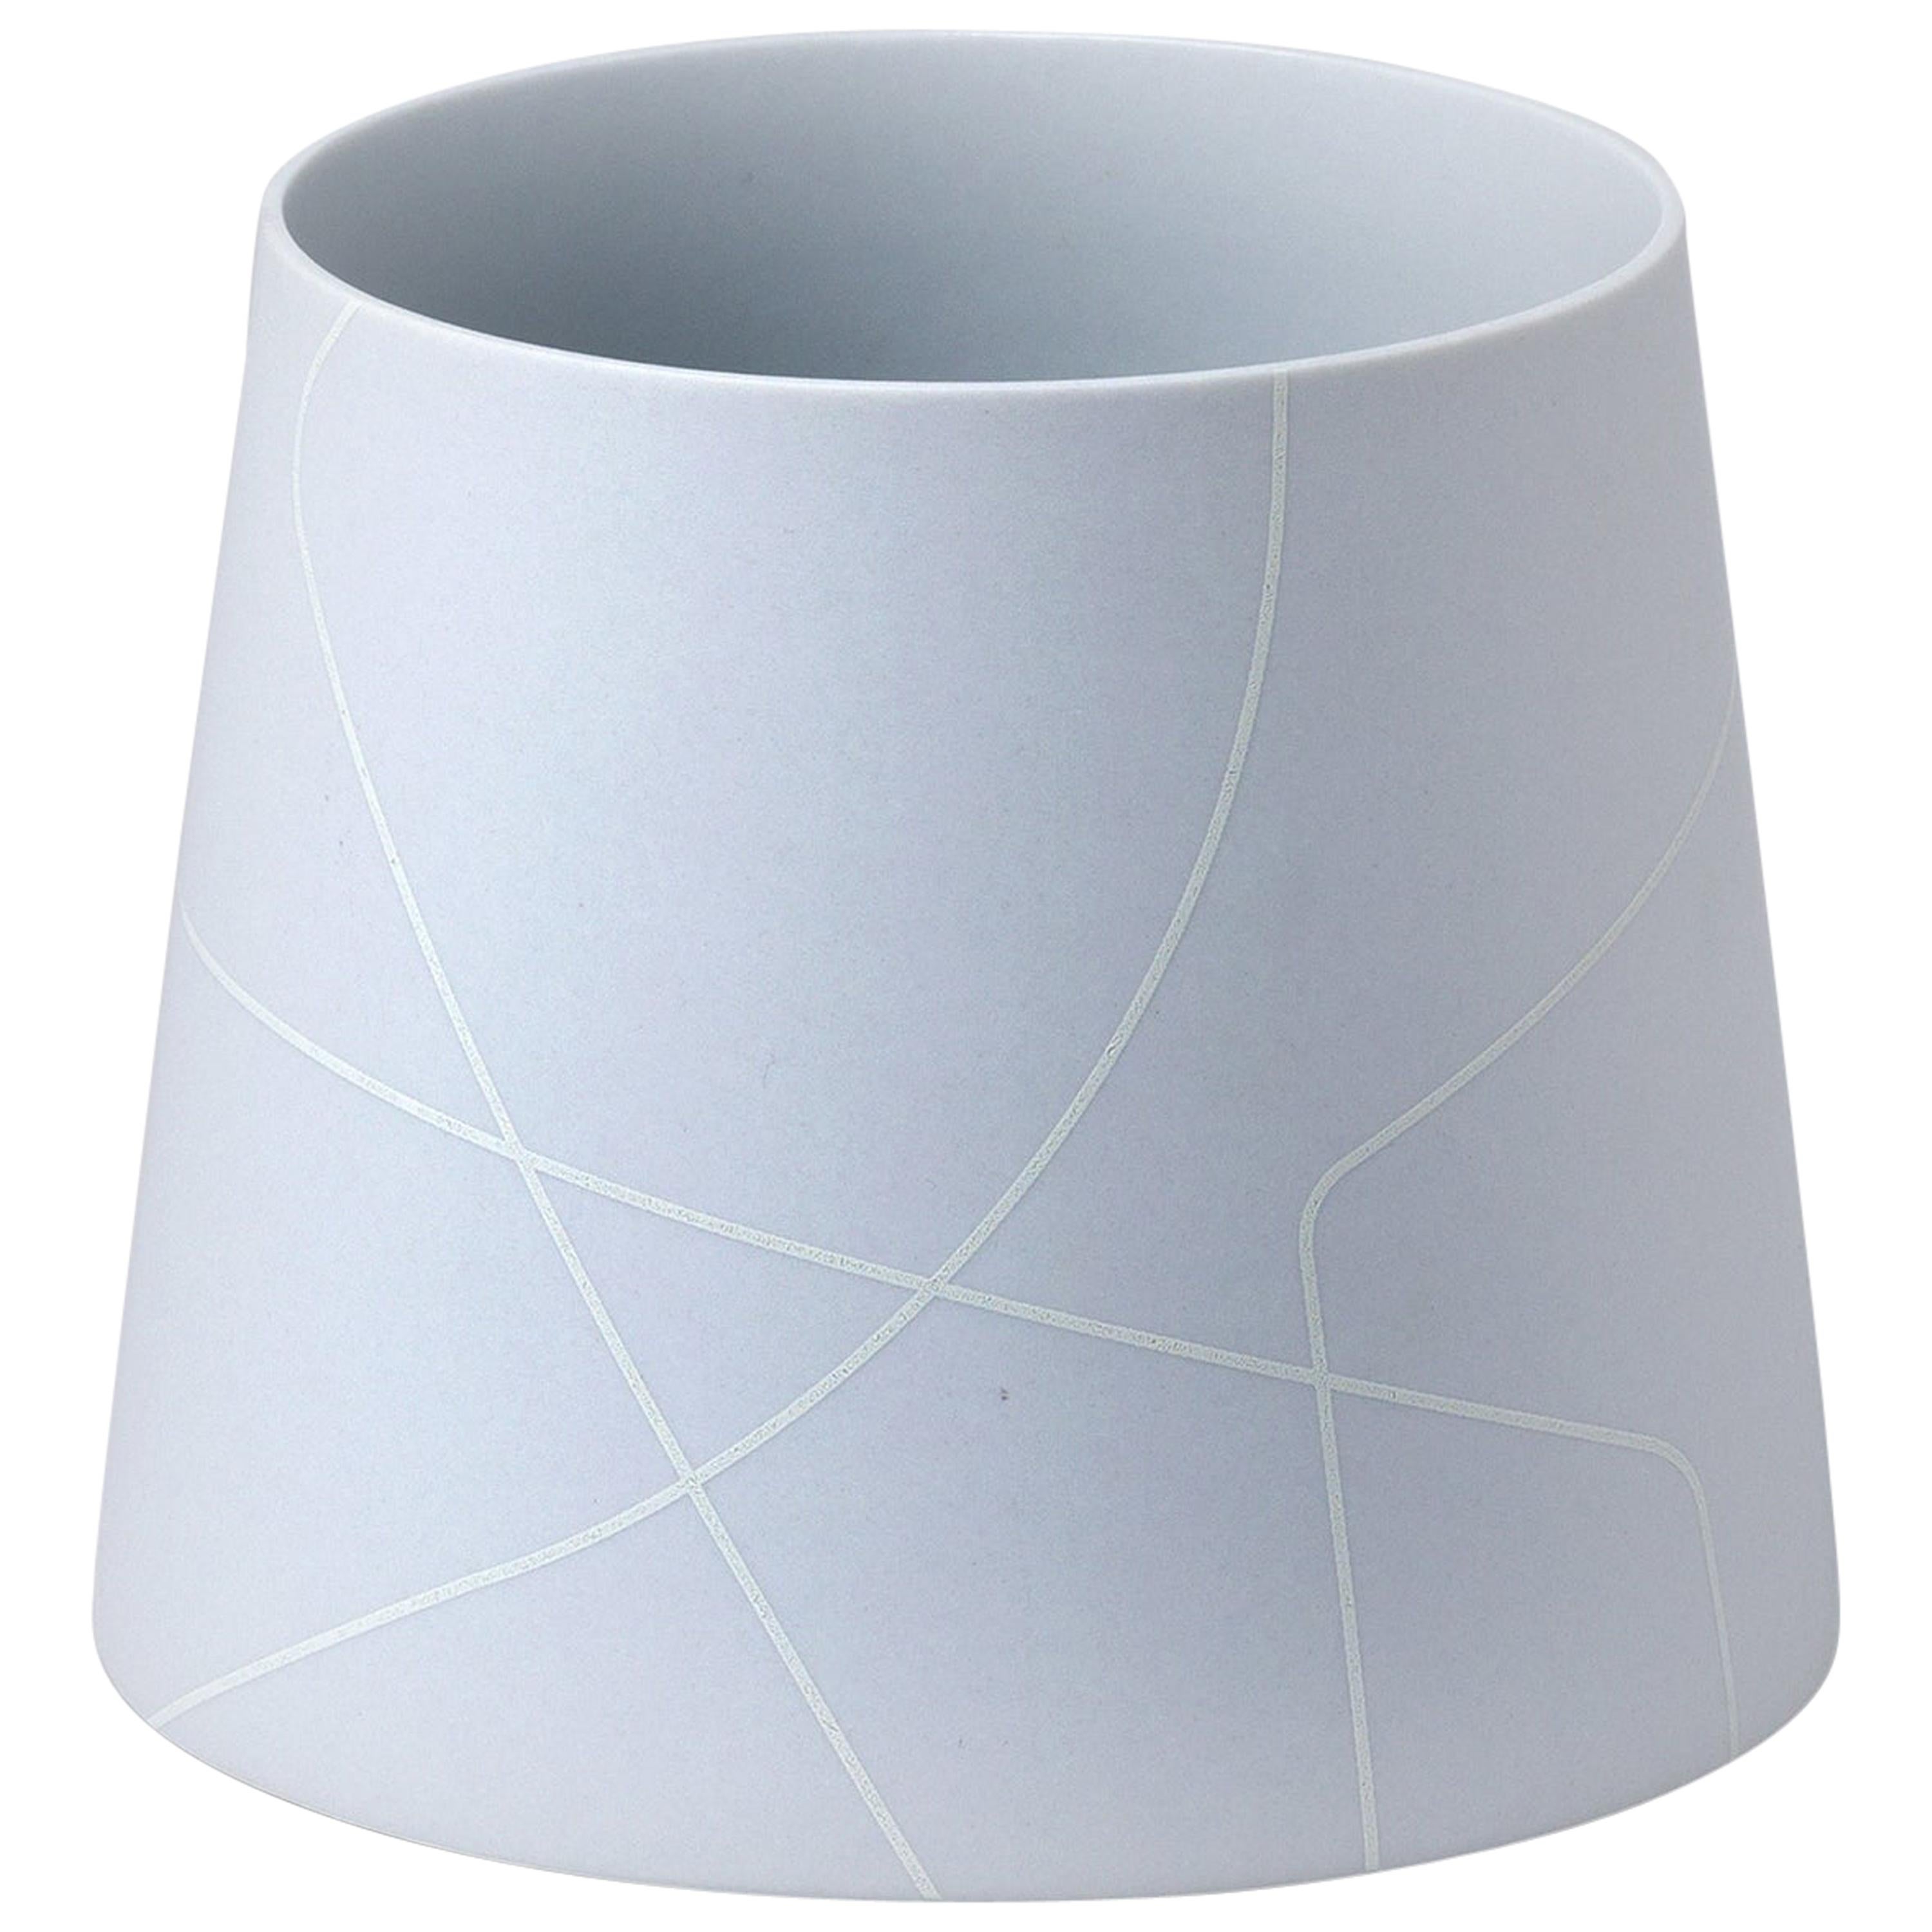 Petit vase conique en céramique gris clair mat avec motif de lignes graphiques